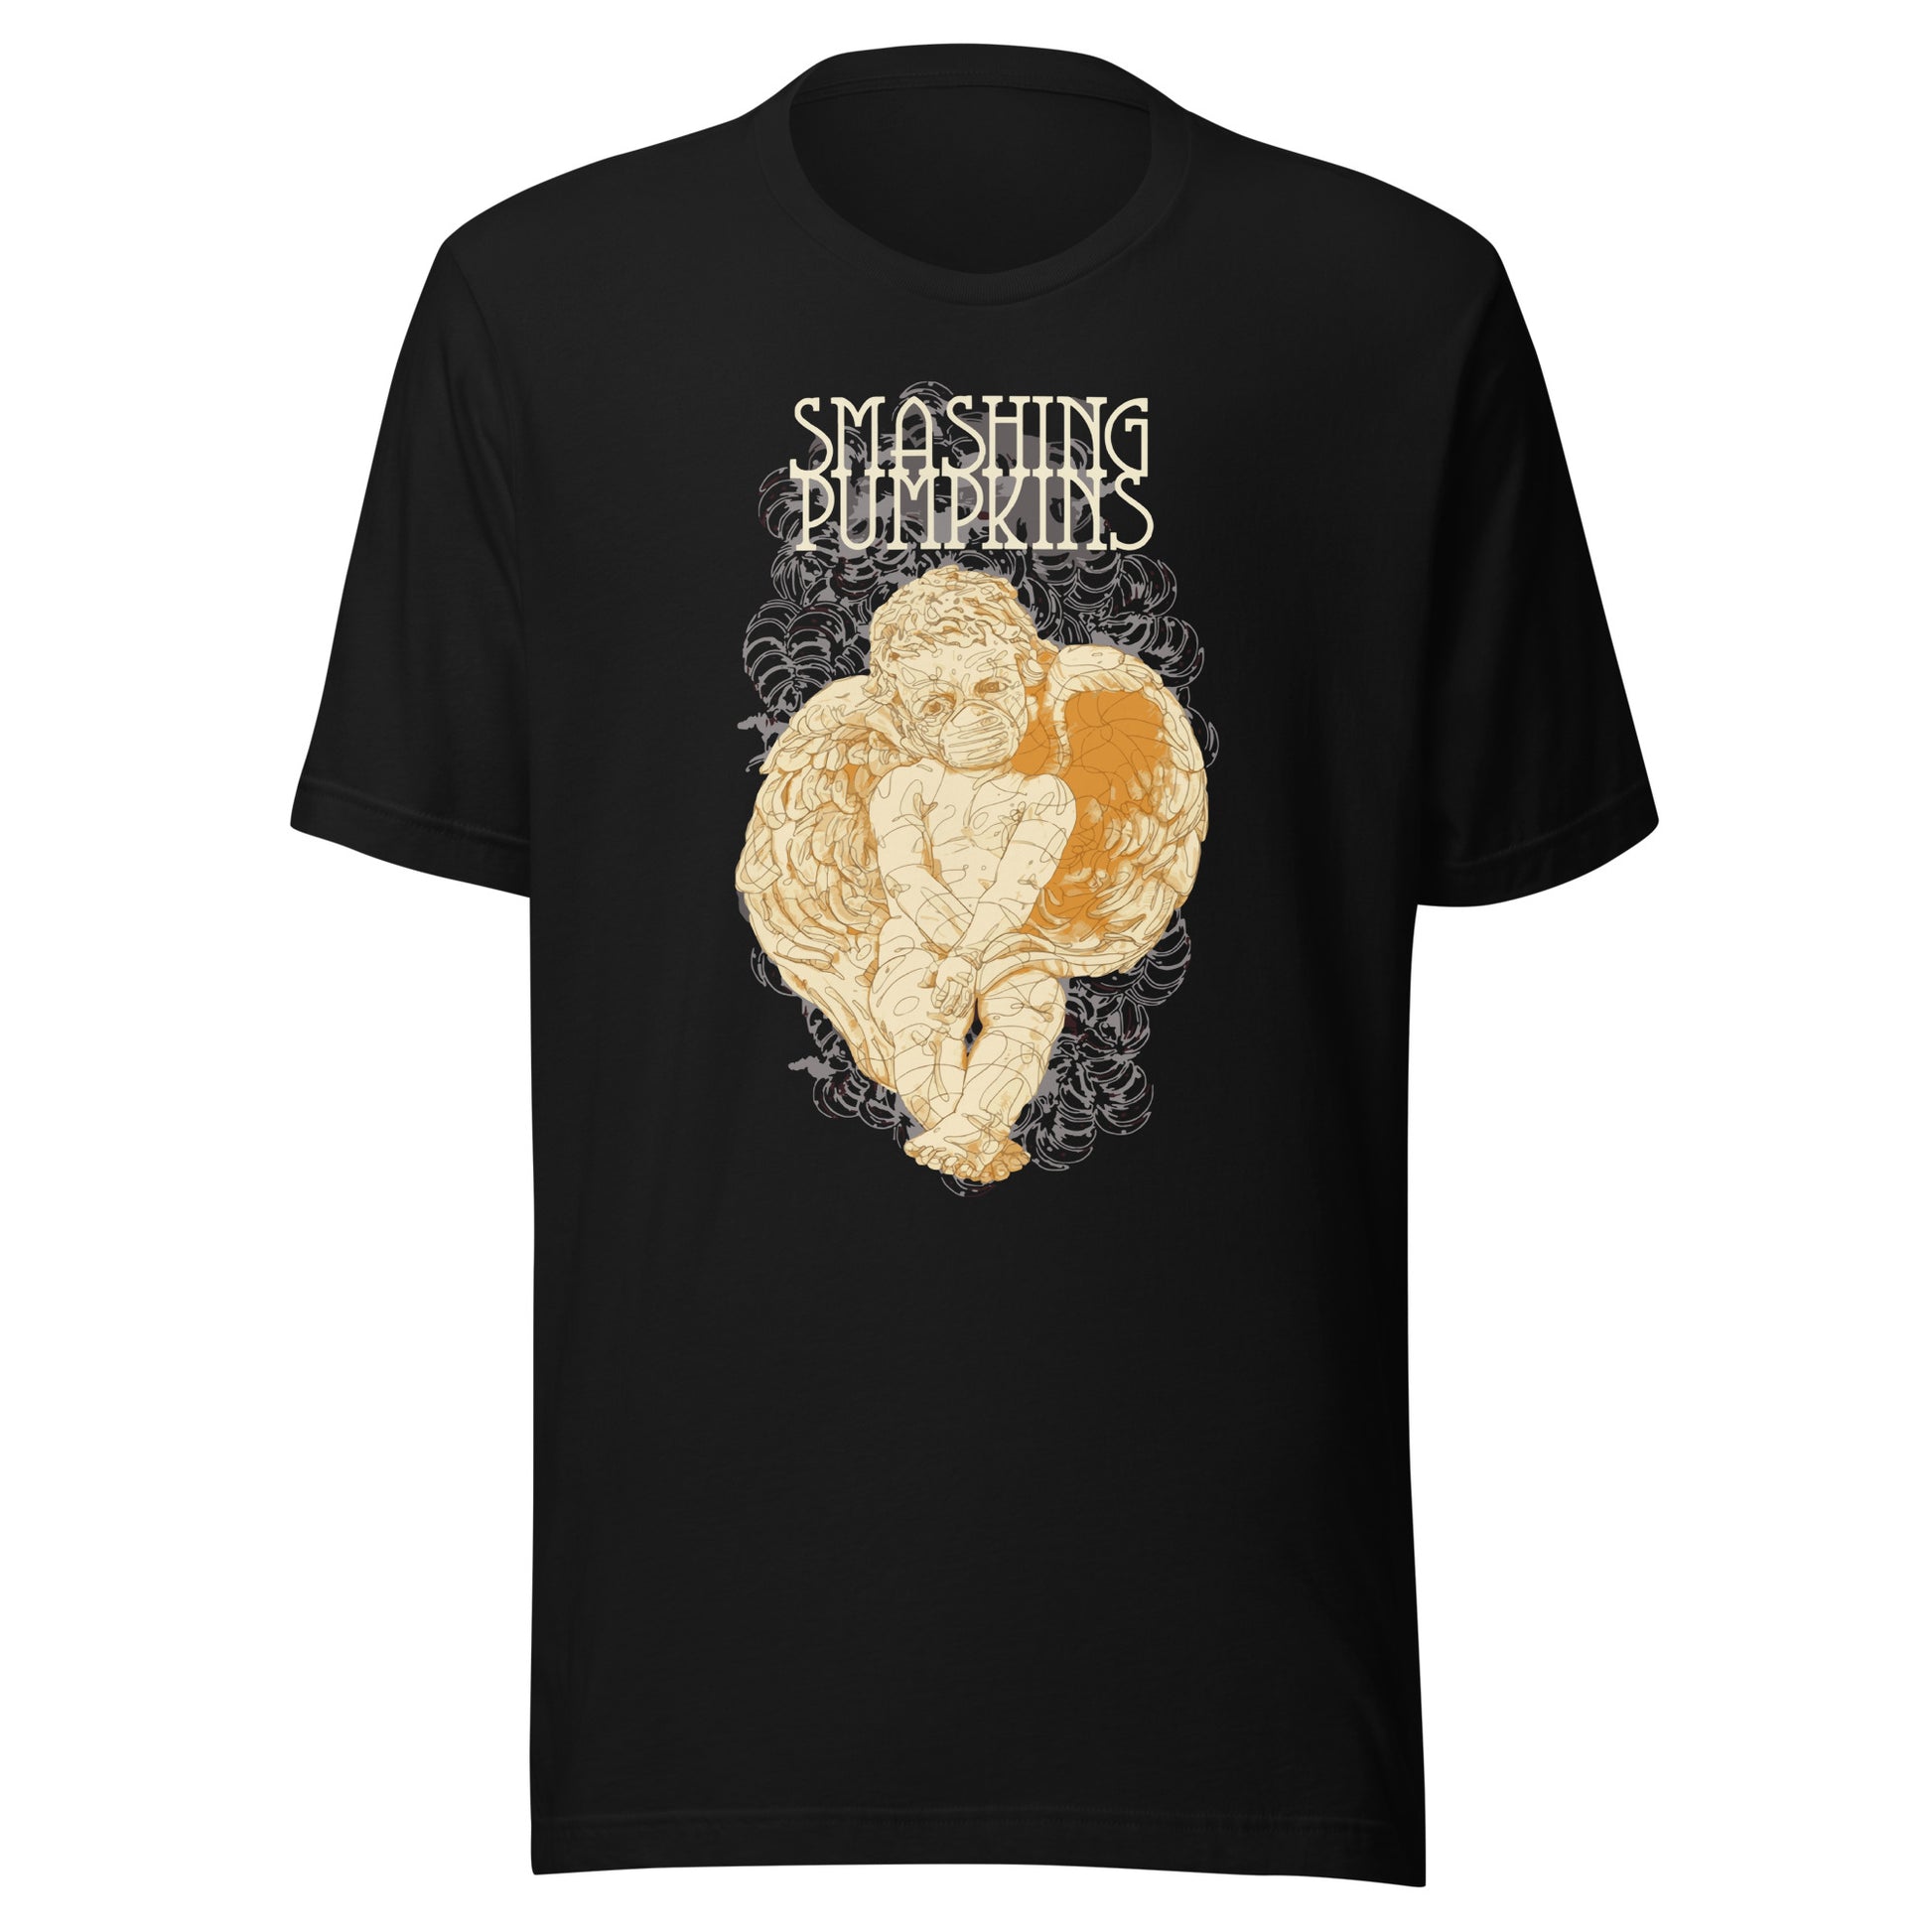 ¡Compra el mejor merchandising en Superstar! Encuentra diseños únicos y de alta calidad en playeras, Smashing Pumpkins Angel